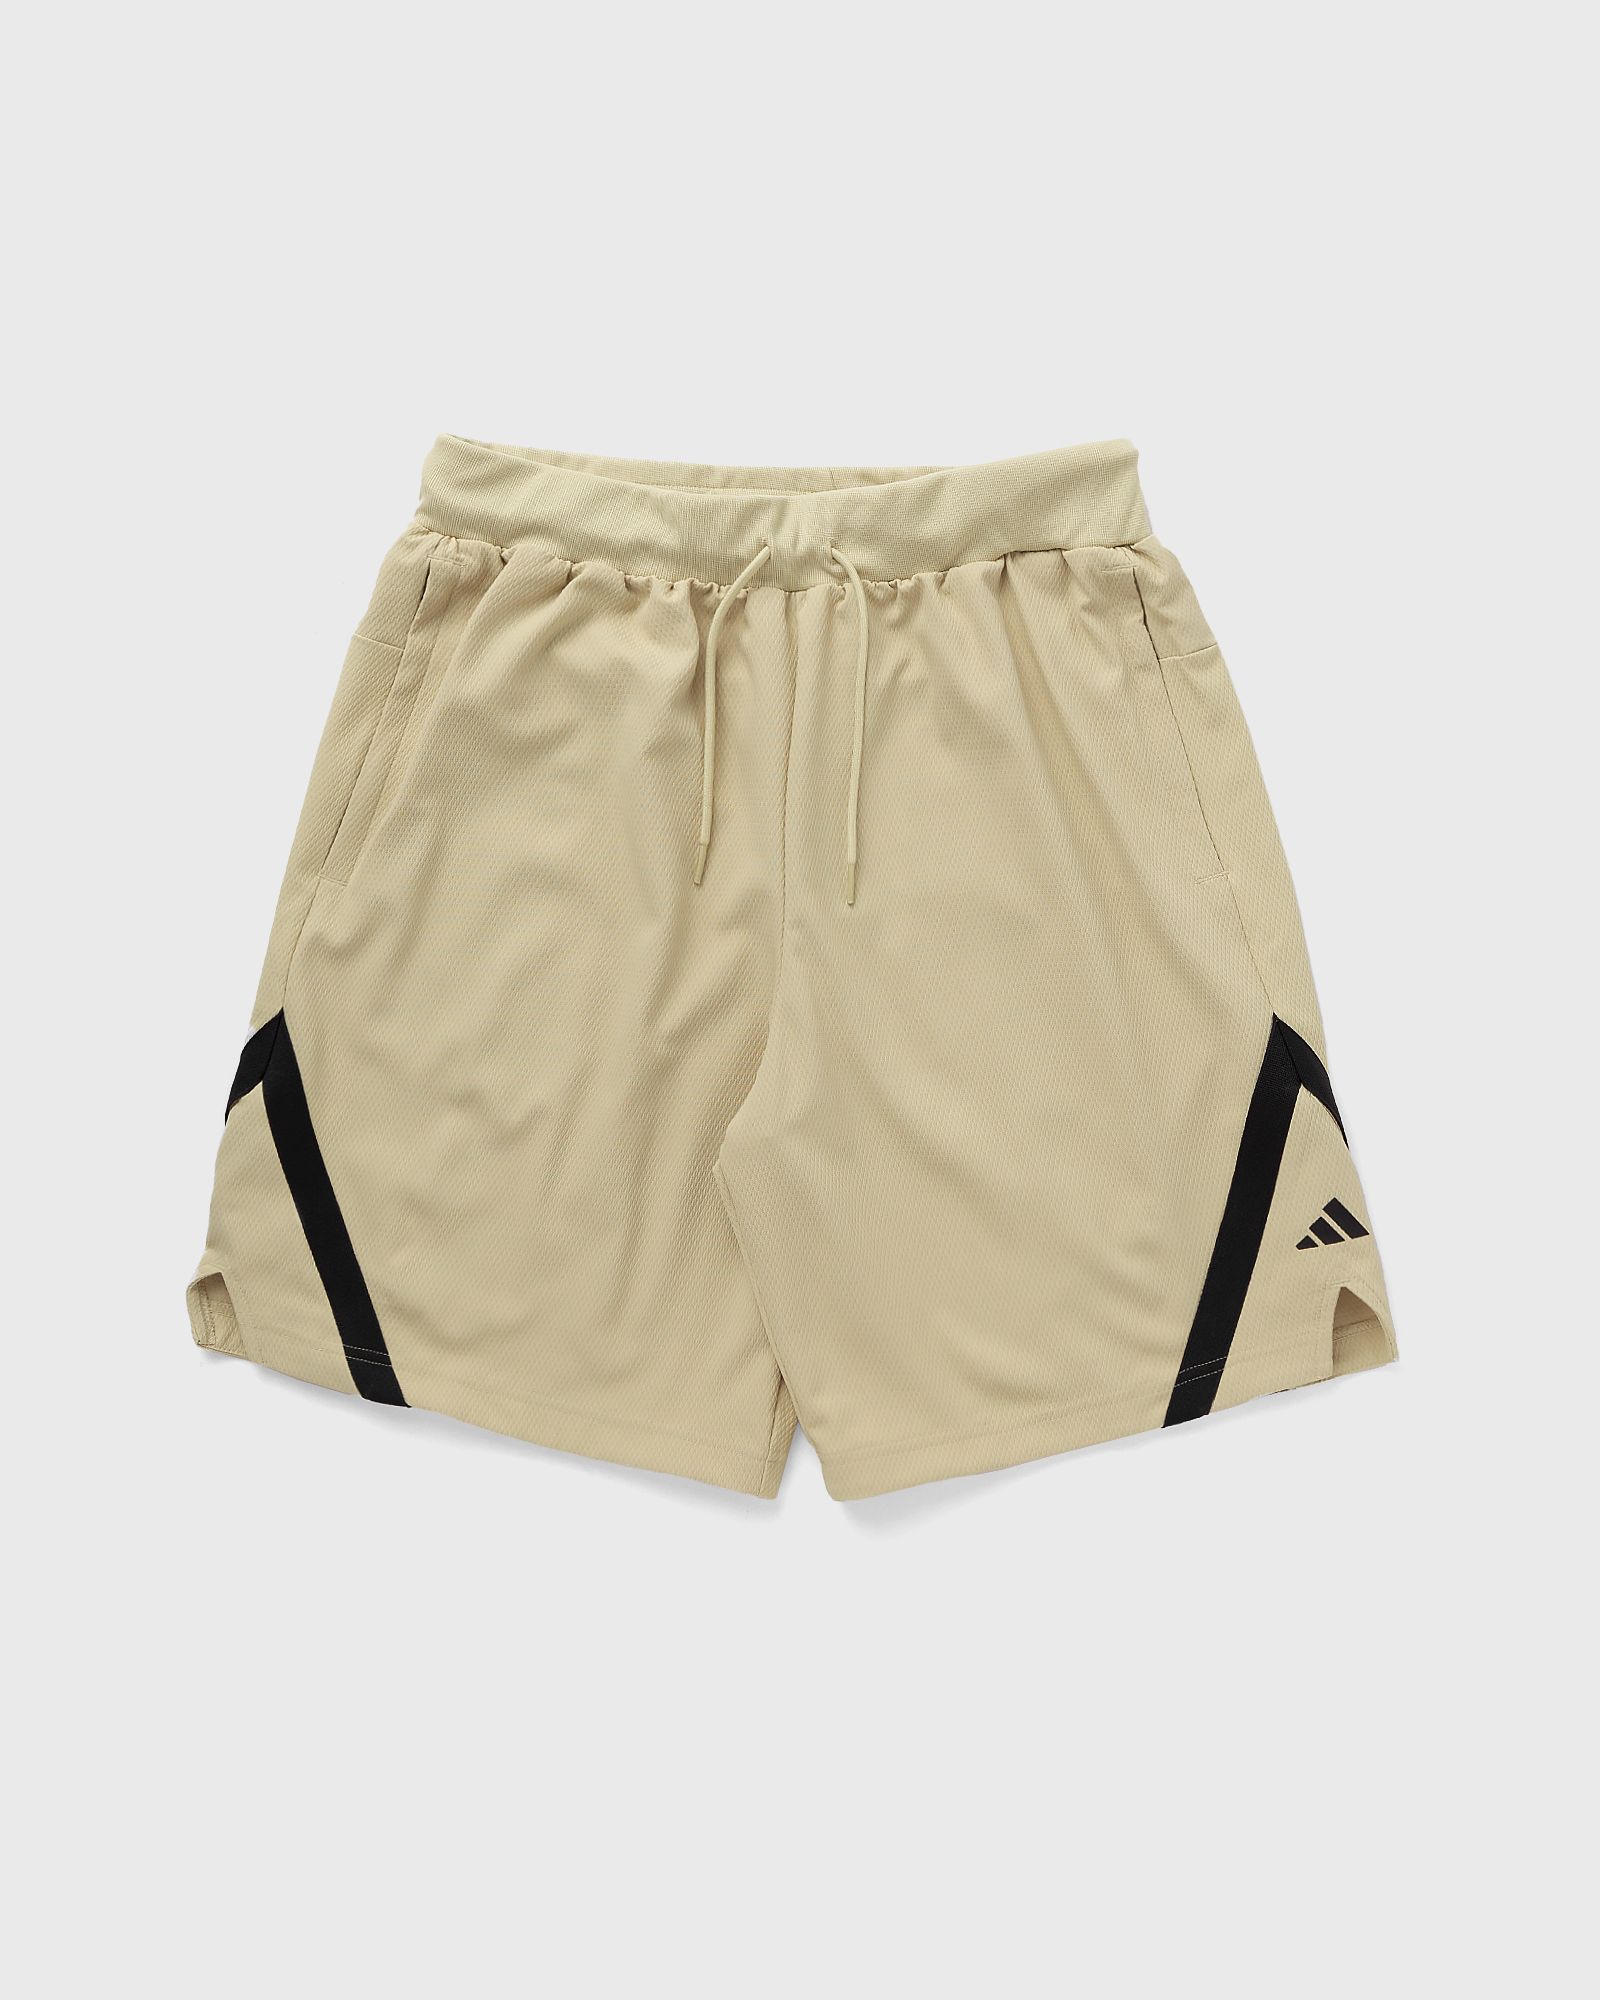 Adidas - slct wv shorts men sport & team shorts beige in größe:xxl